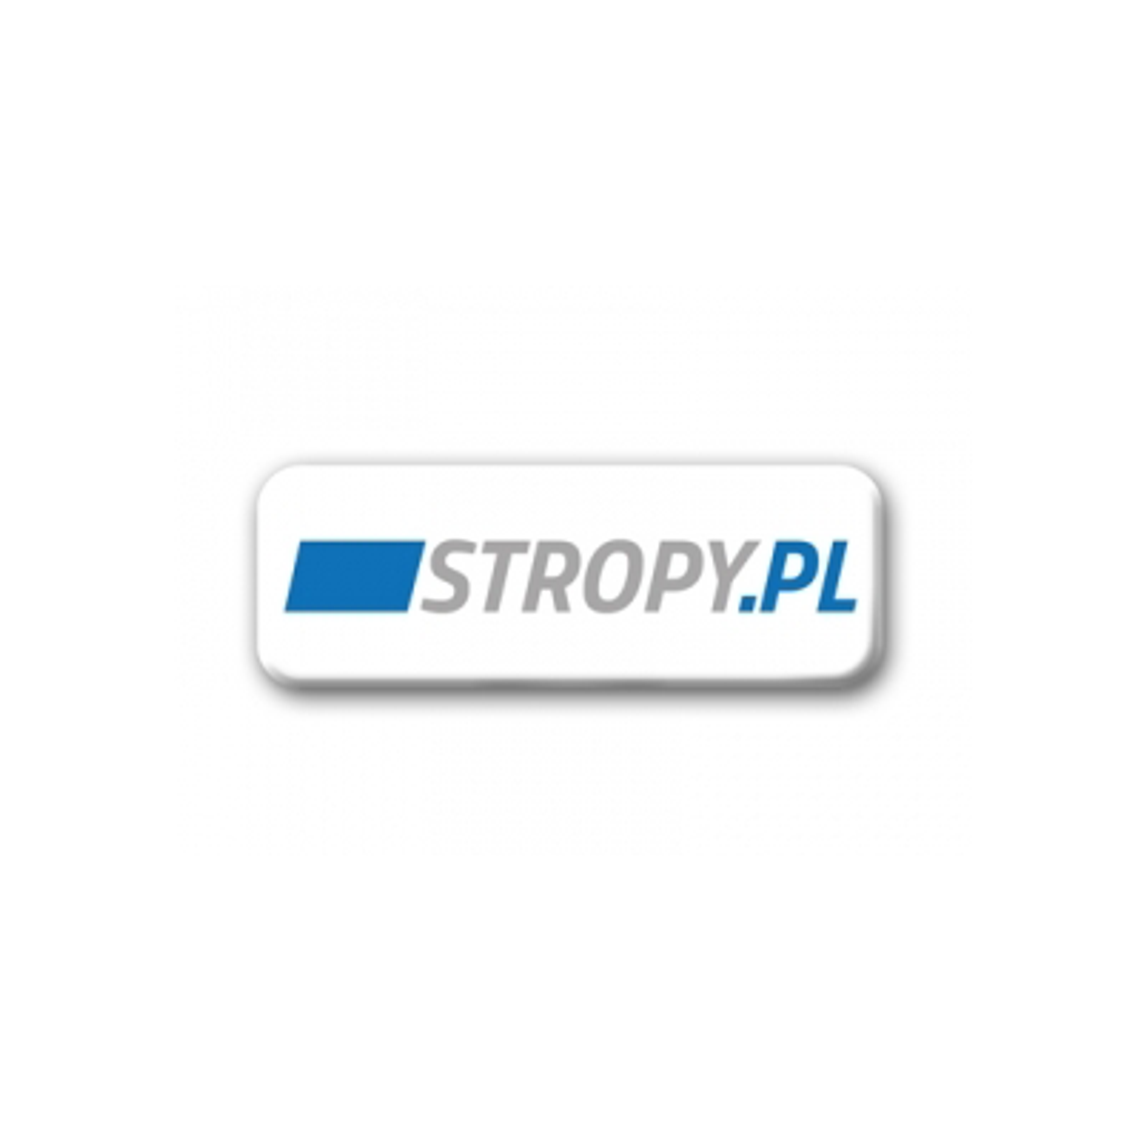 Stropy.pl - najlepsze stropy i gotowe projekty systemów stropowych